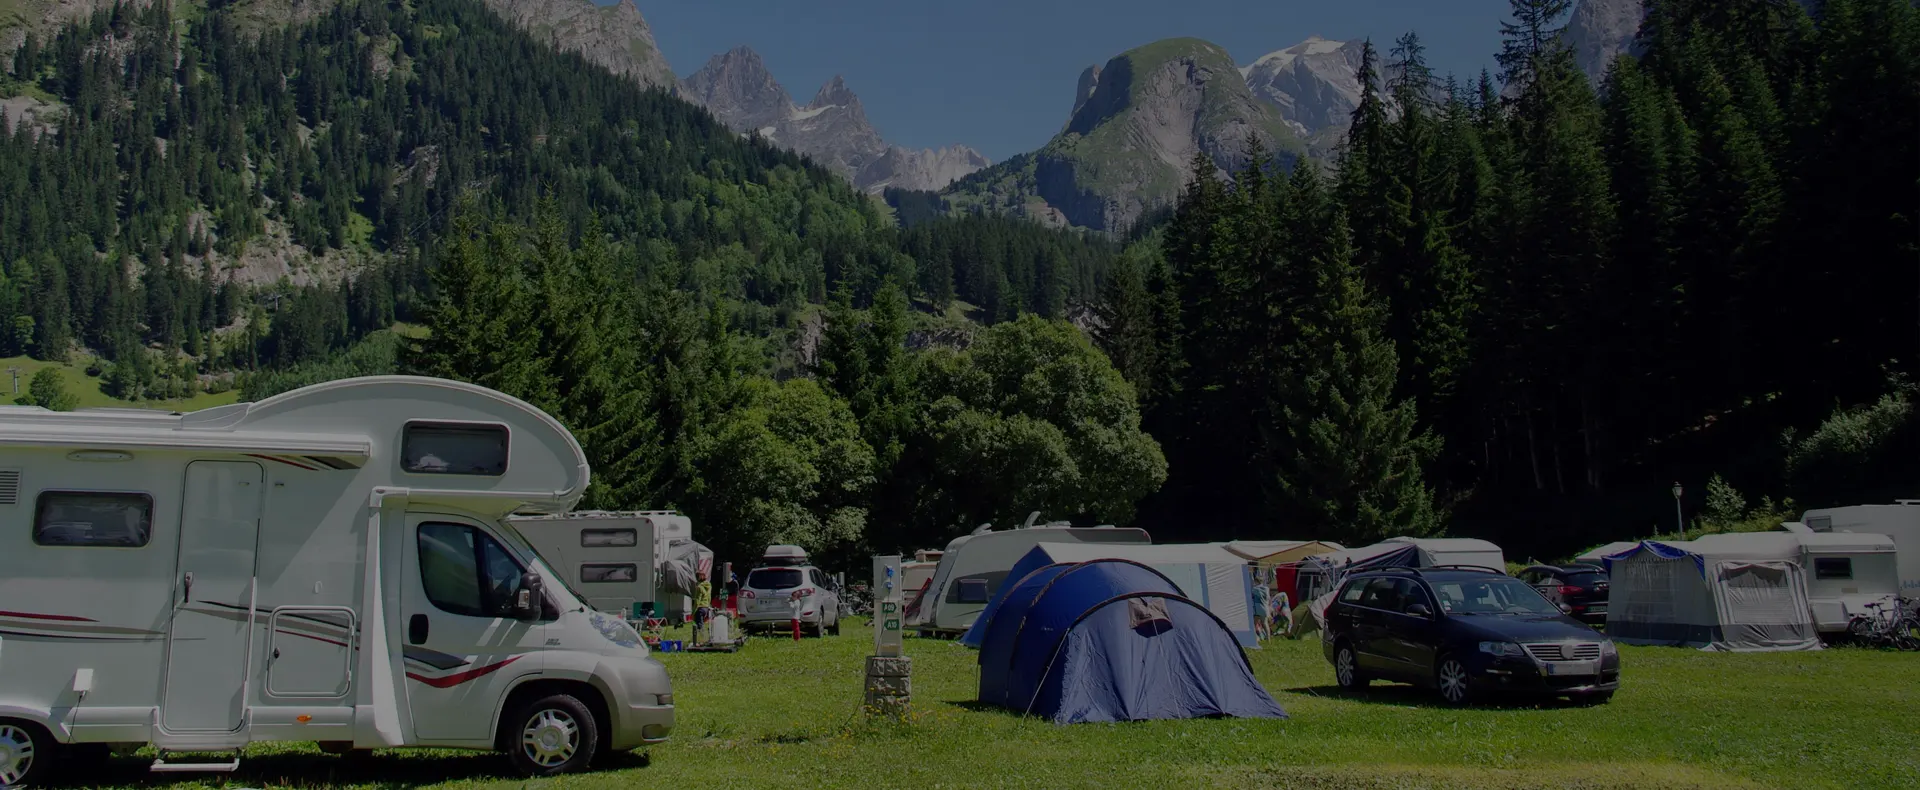 Les meilleurs campings en France